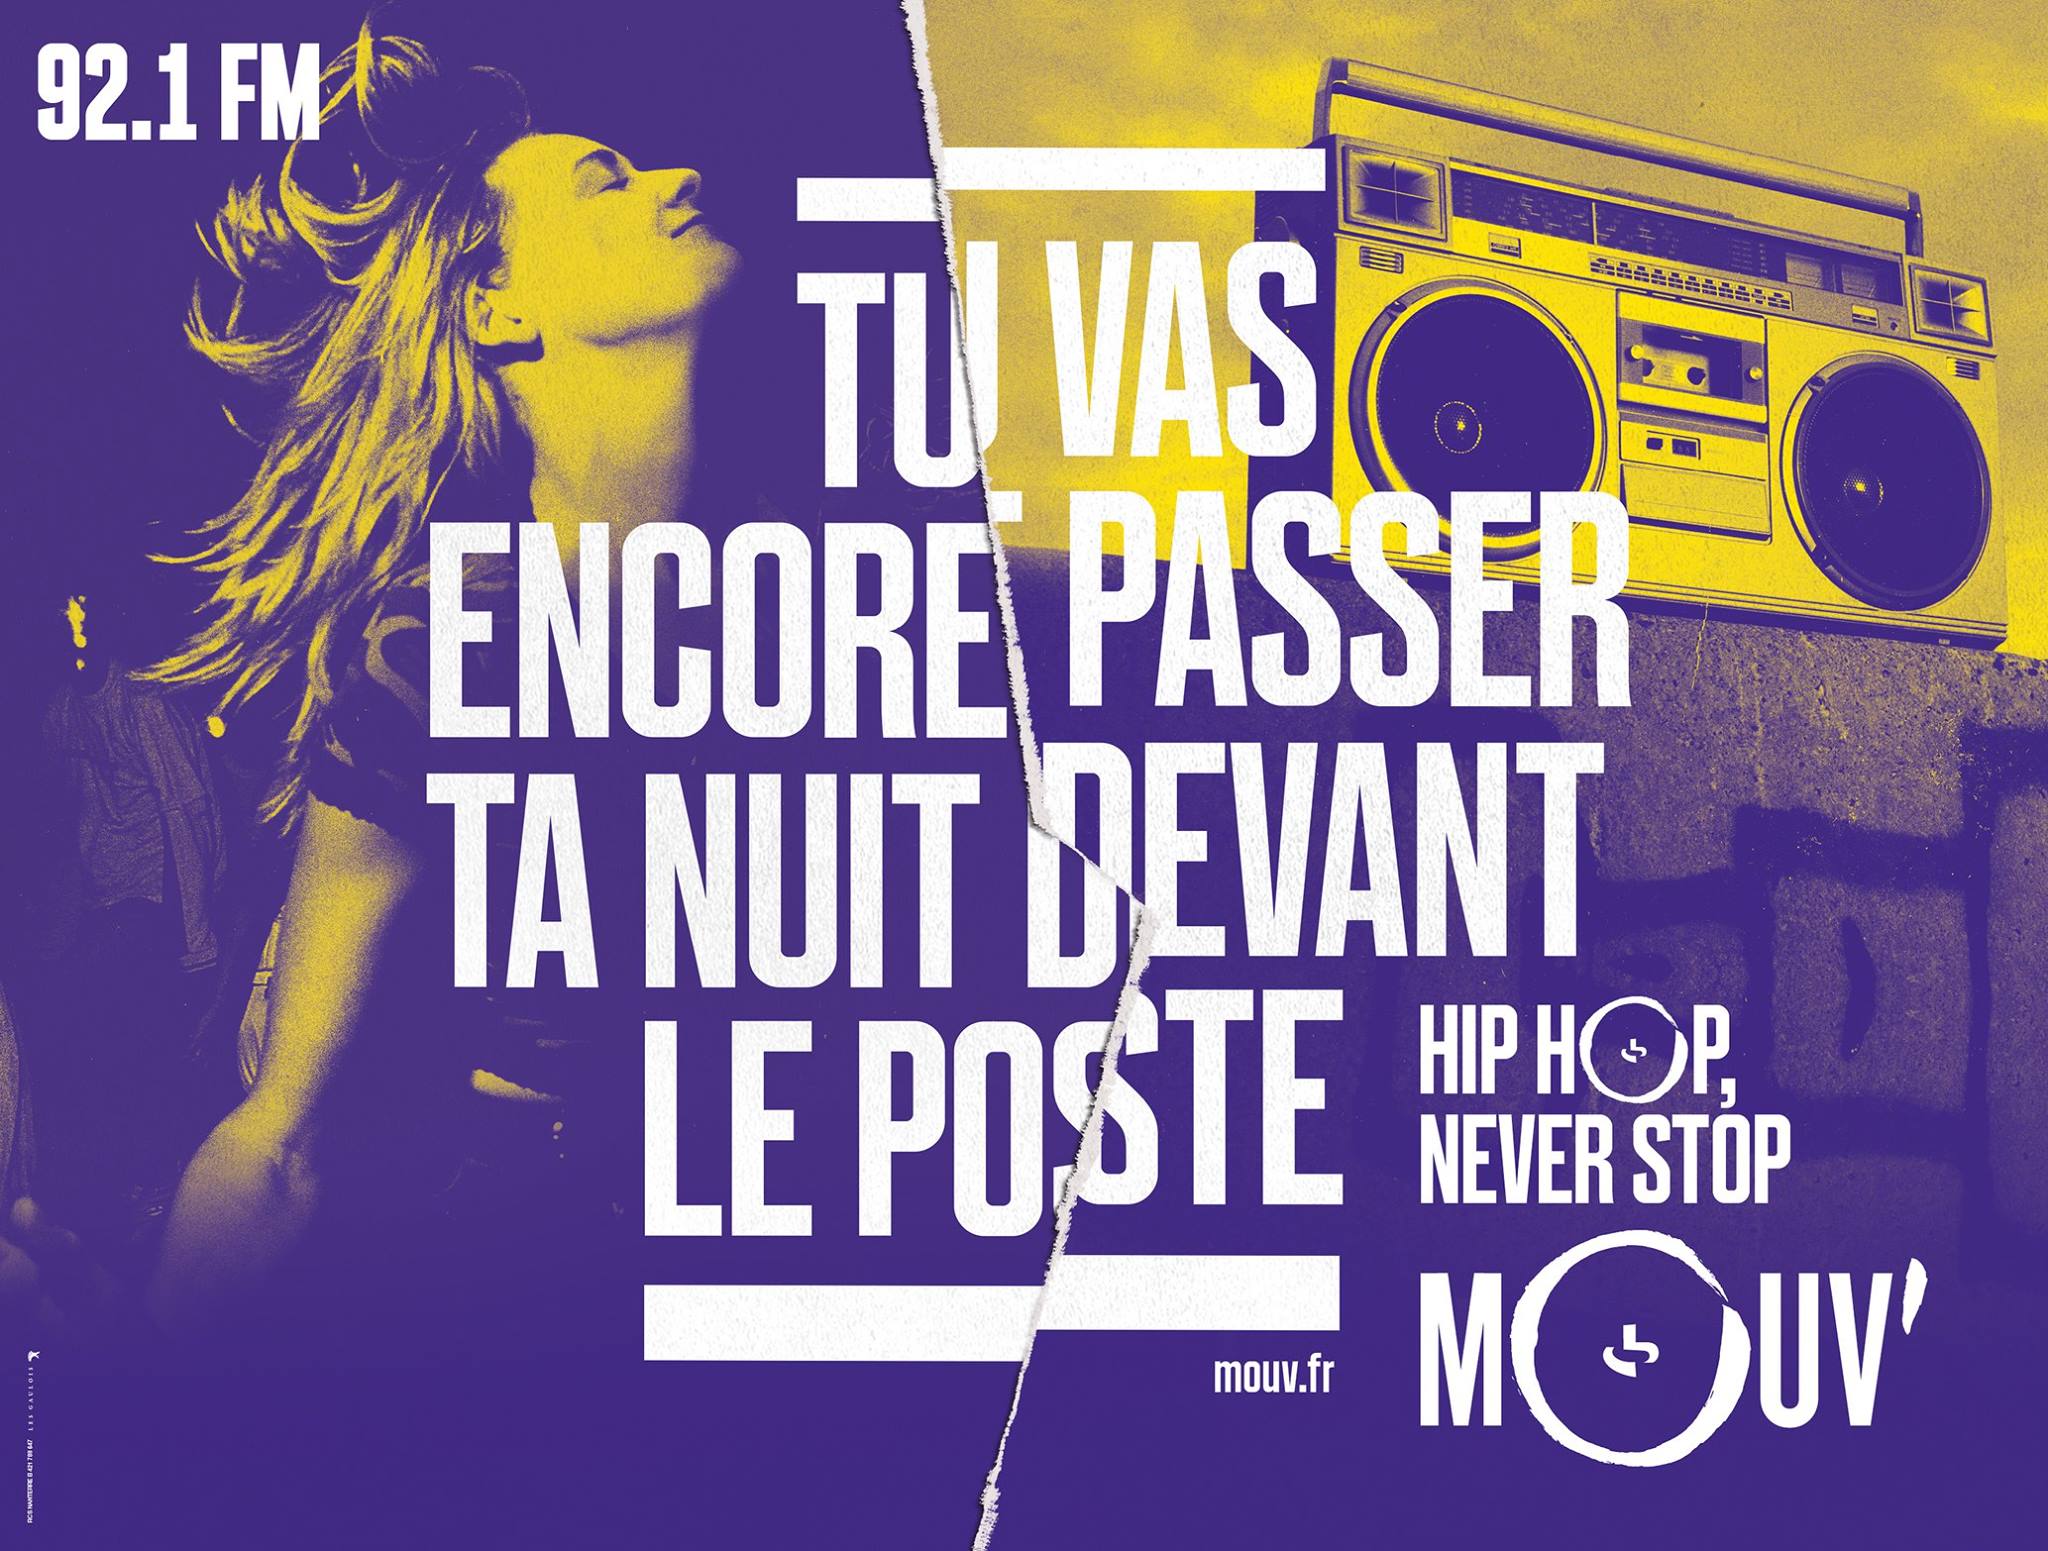 mouv-radio-hip-hop-rap-publicite-marketing-affiche-rimes-paroles-novembre-2015-agence-les-gaulois-havas-2